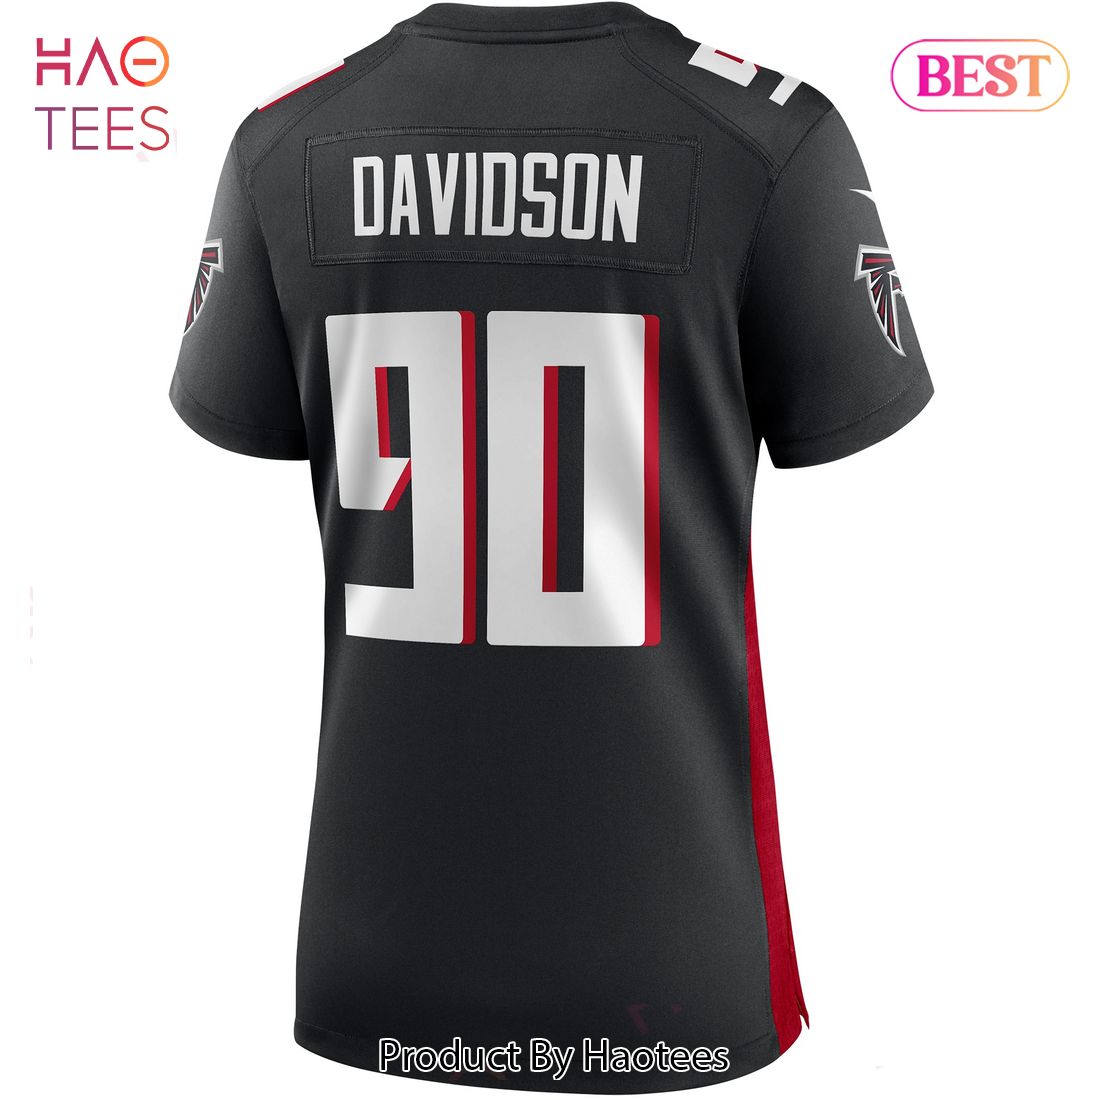 Marlon Davidson Atlanta Falcons Nike Women's Game Jersey Black